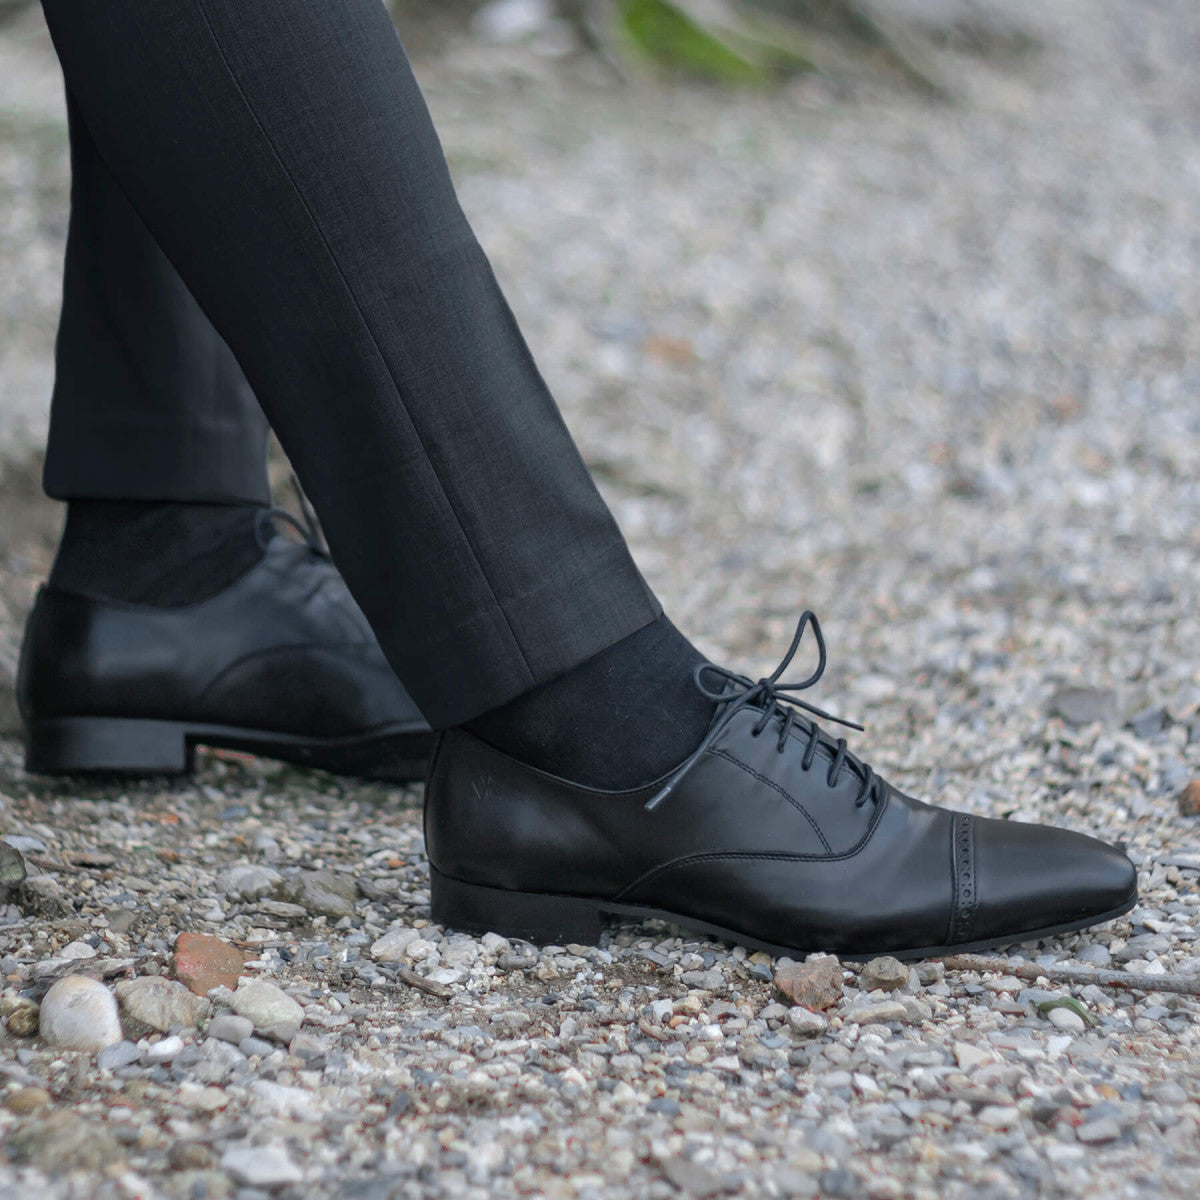 Chaussures véganes de costume Noires pour hommes - Watson - Meanwhile Boutique